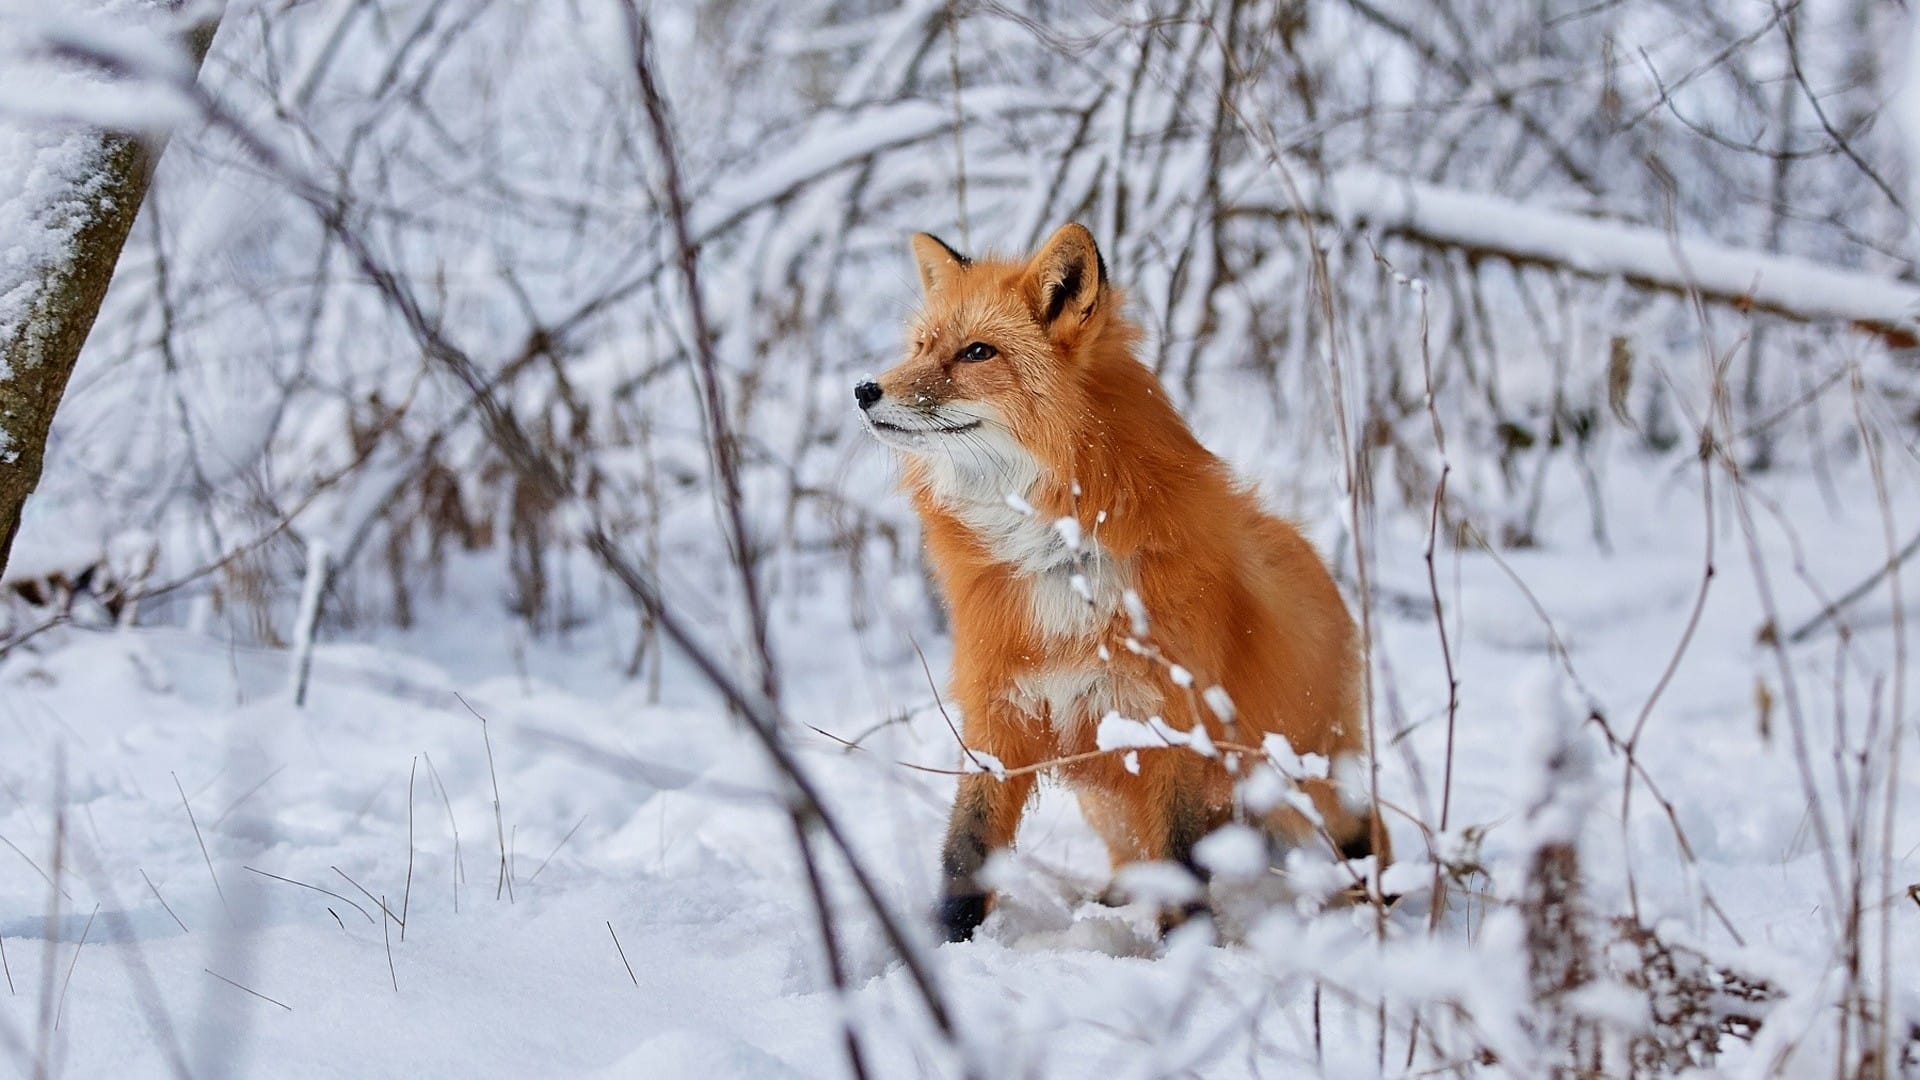 冬天雪地里小狐狸可爱呆萌系列图片壁纸大全